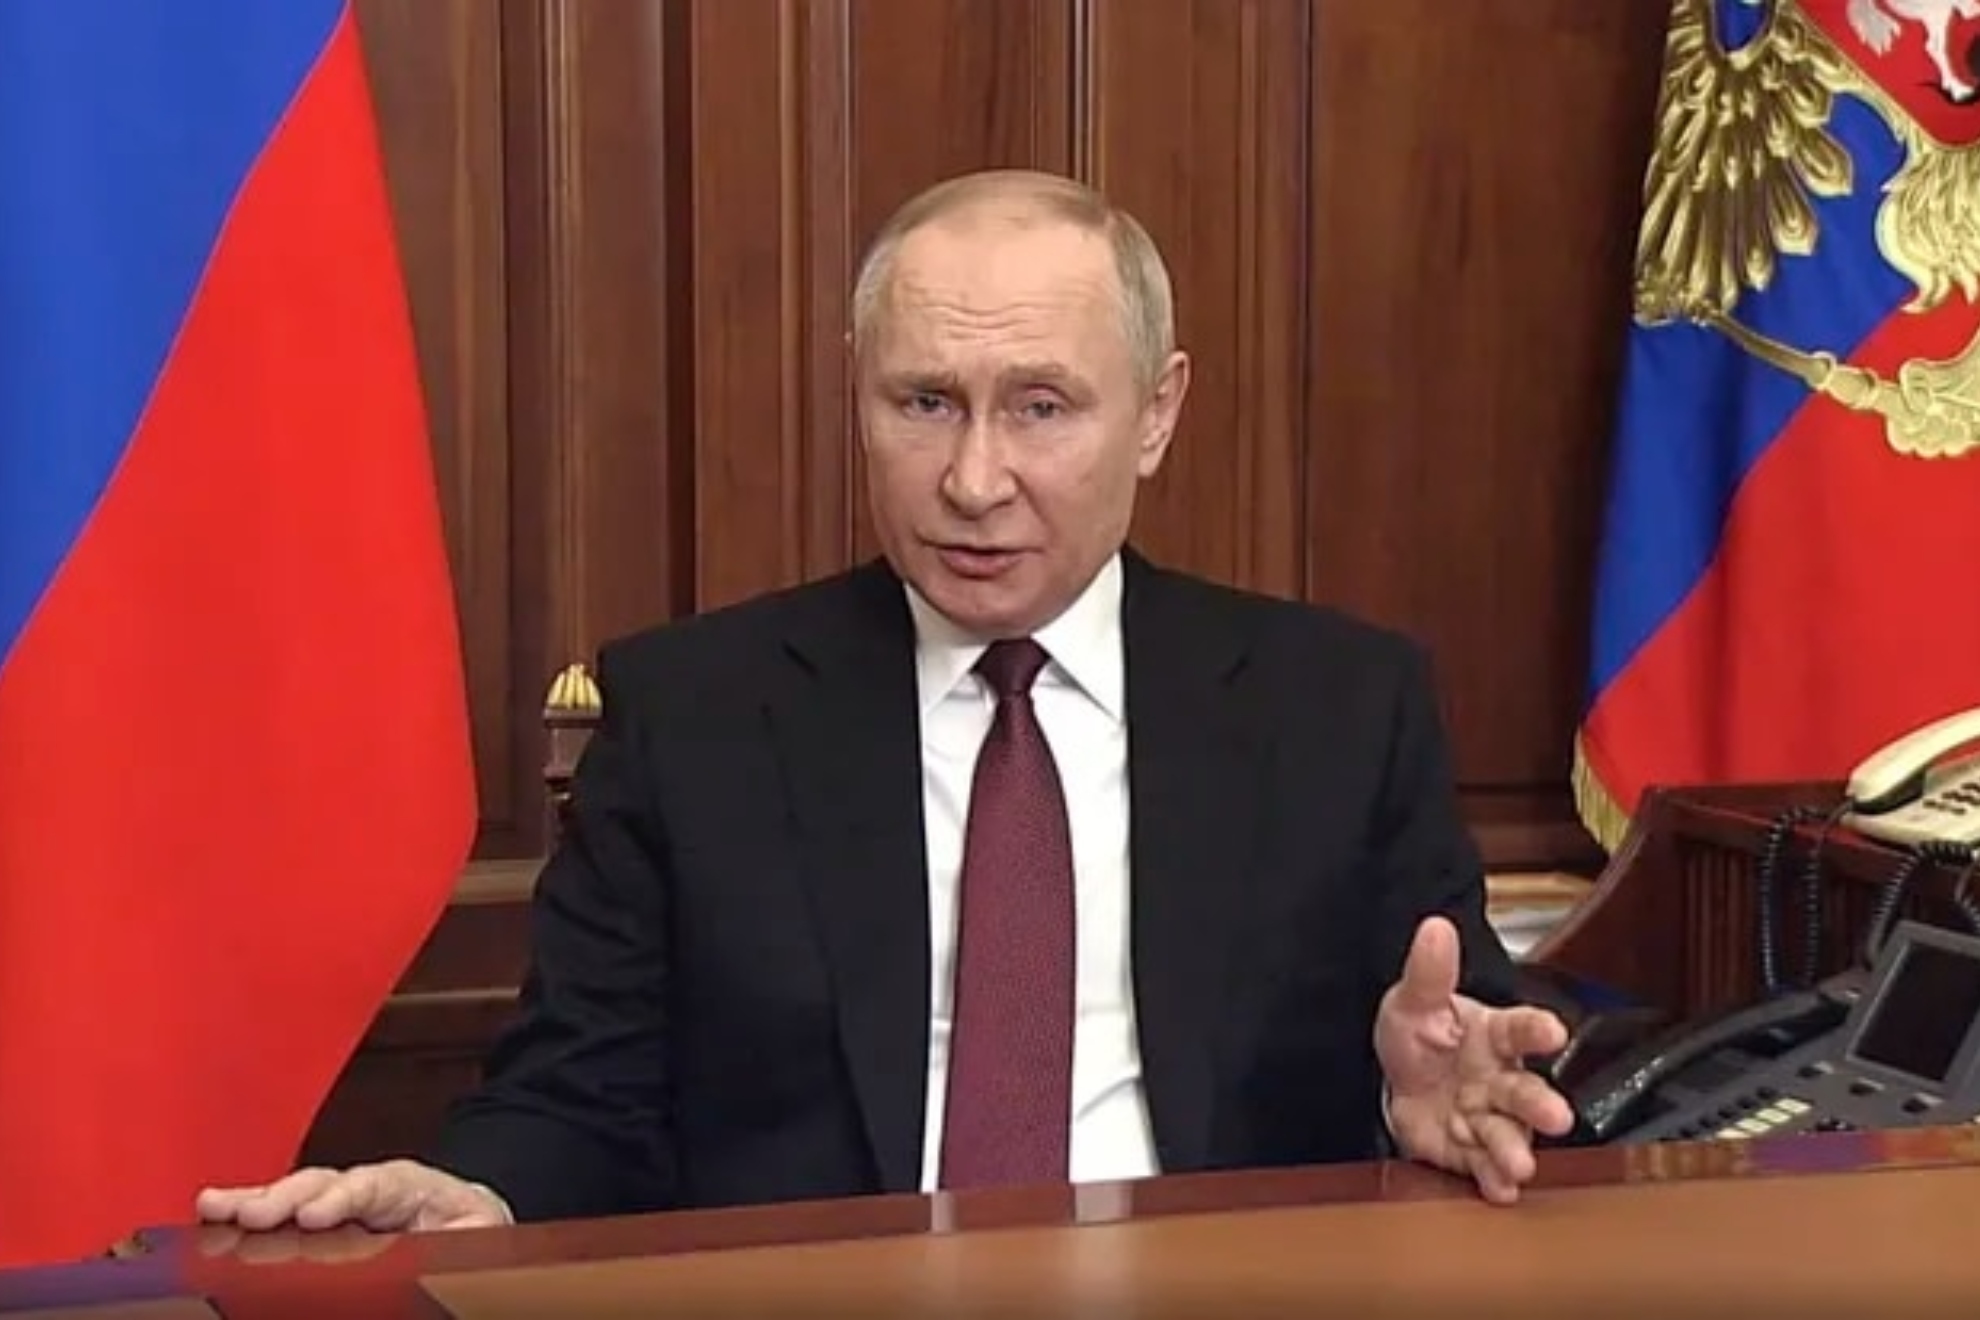 El vdeo que demuestra que Putin padece alguna anomala en su mano derecha